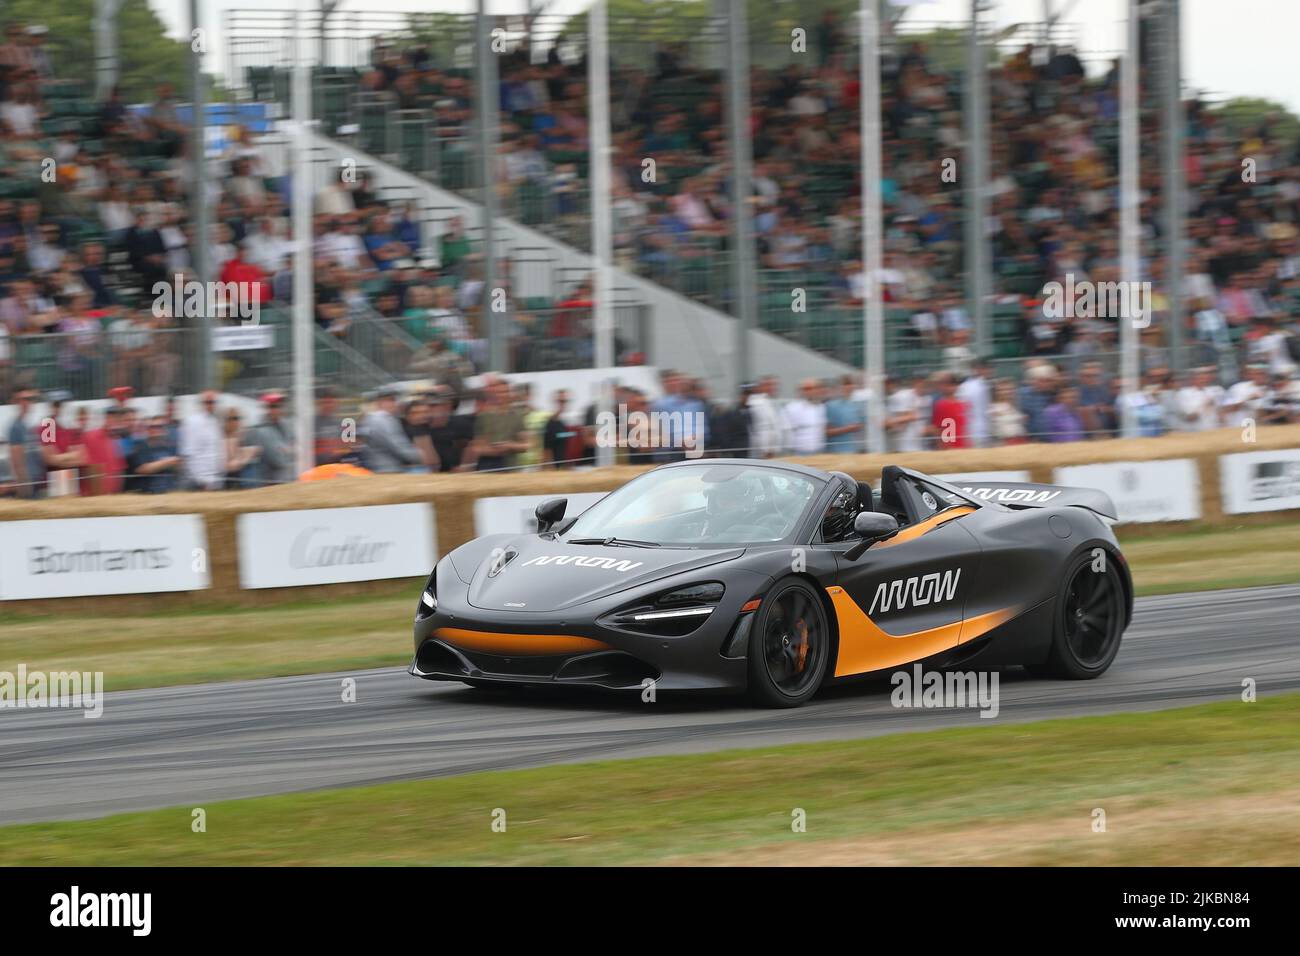 Arrow McLaren Racing Car en el Festival of Speed 2022 en Goodwood, Sussex, Reino Unido Foto de stock